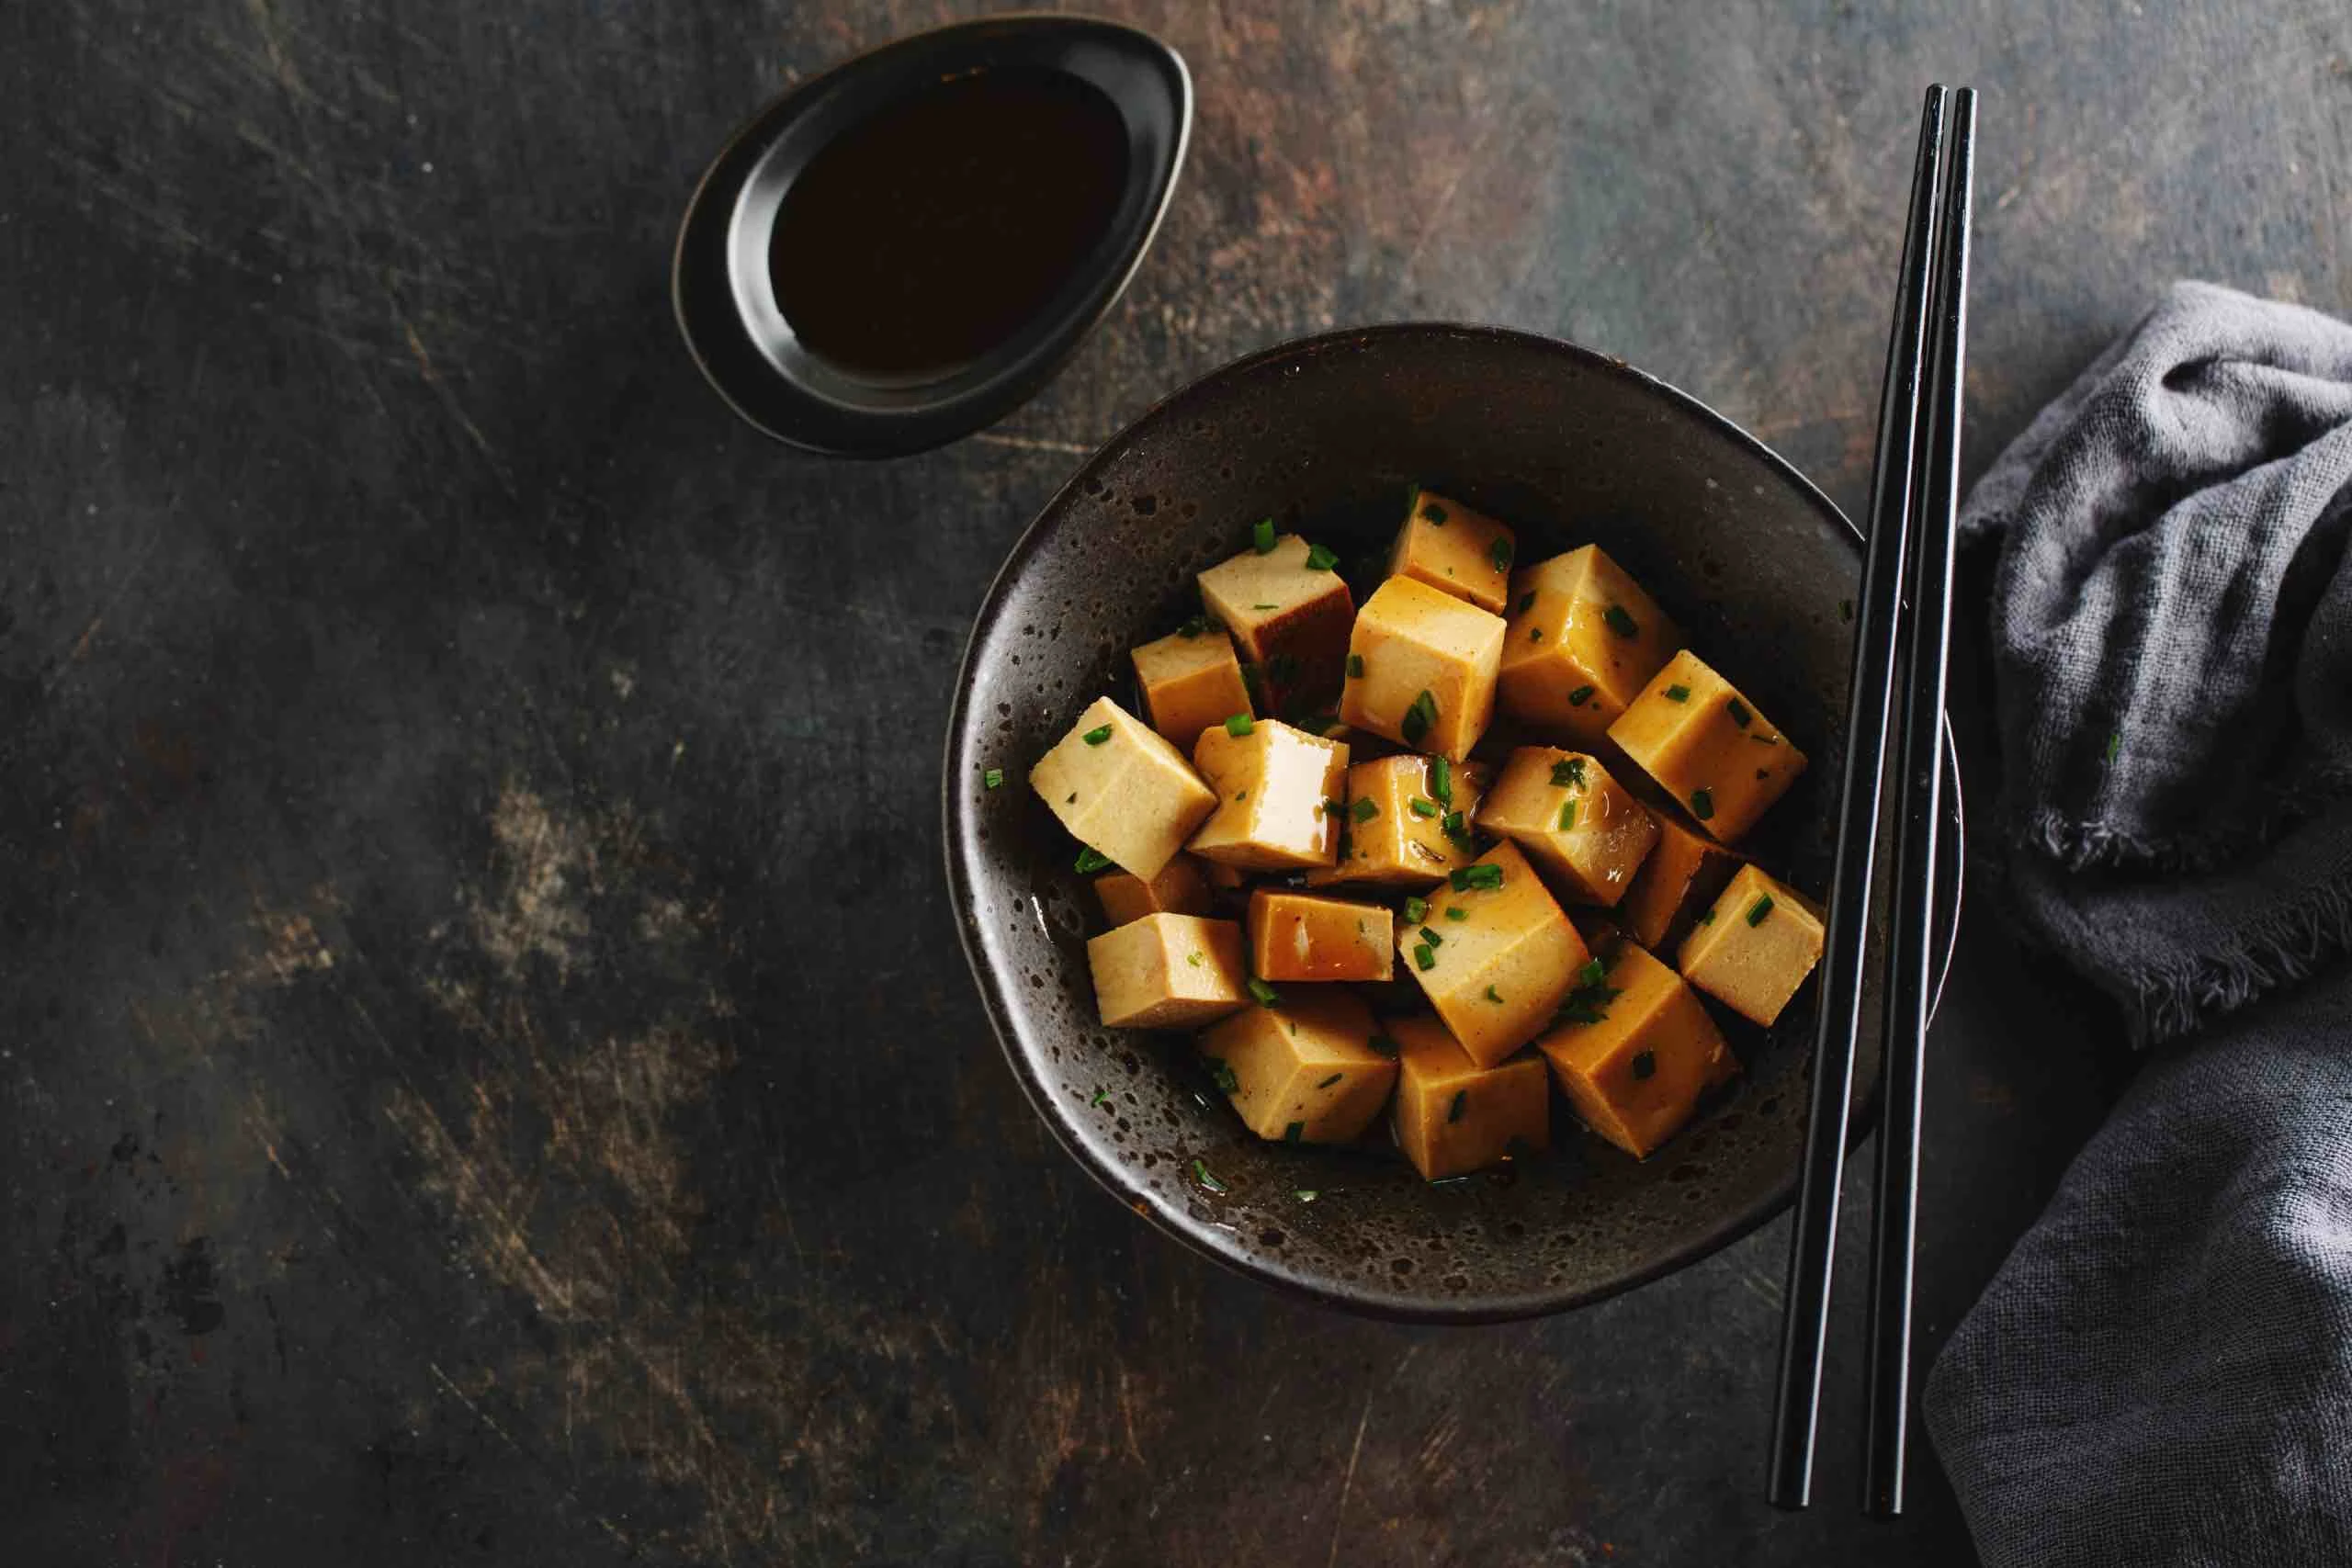 Tofu Nedir? Evde Nasıl Hazırlanır?